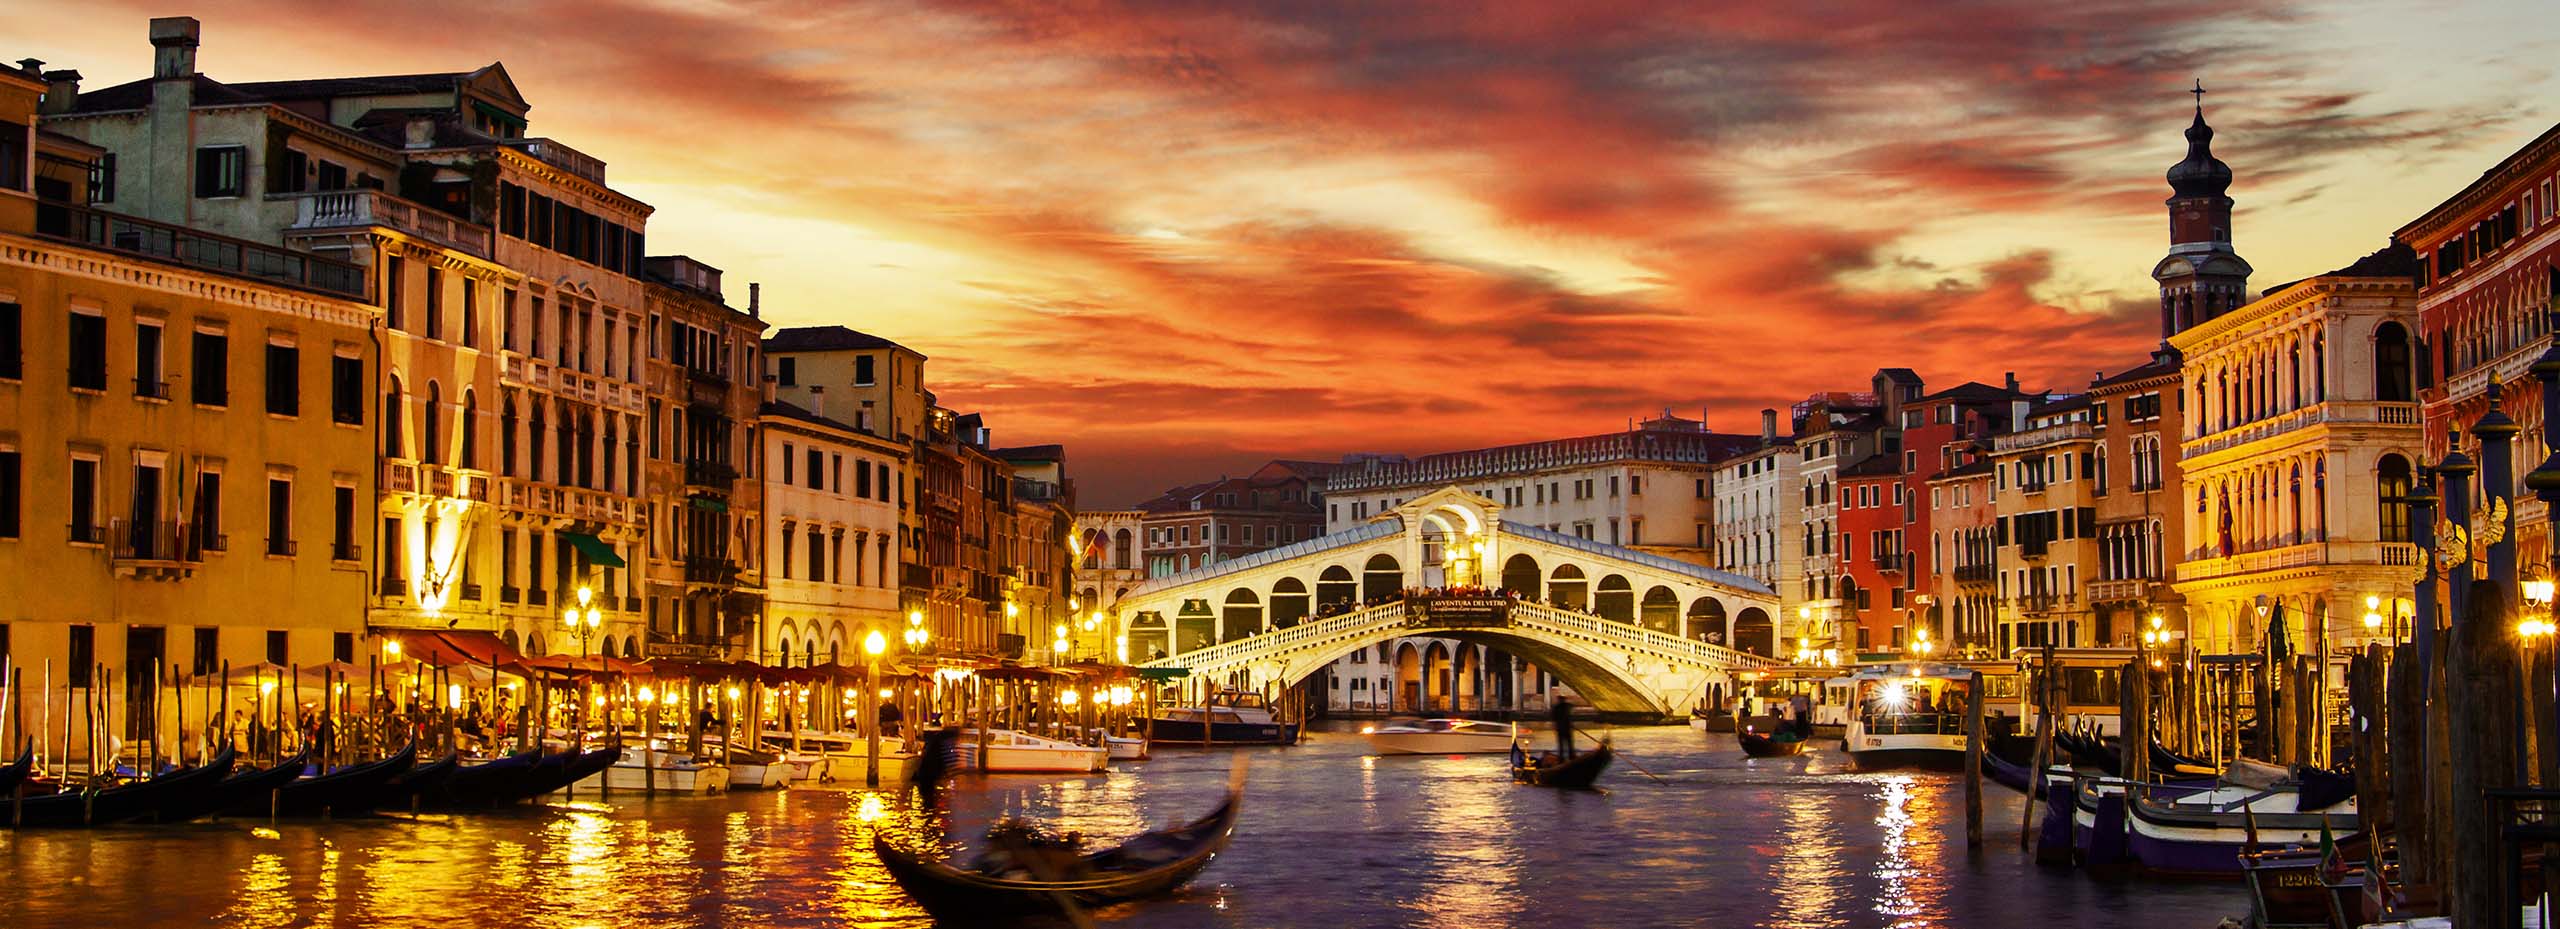 Гранд Канал (Grand Canal) в Венеции